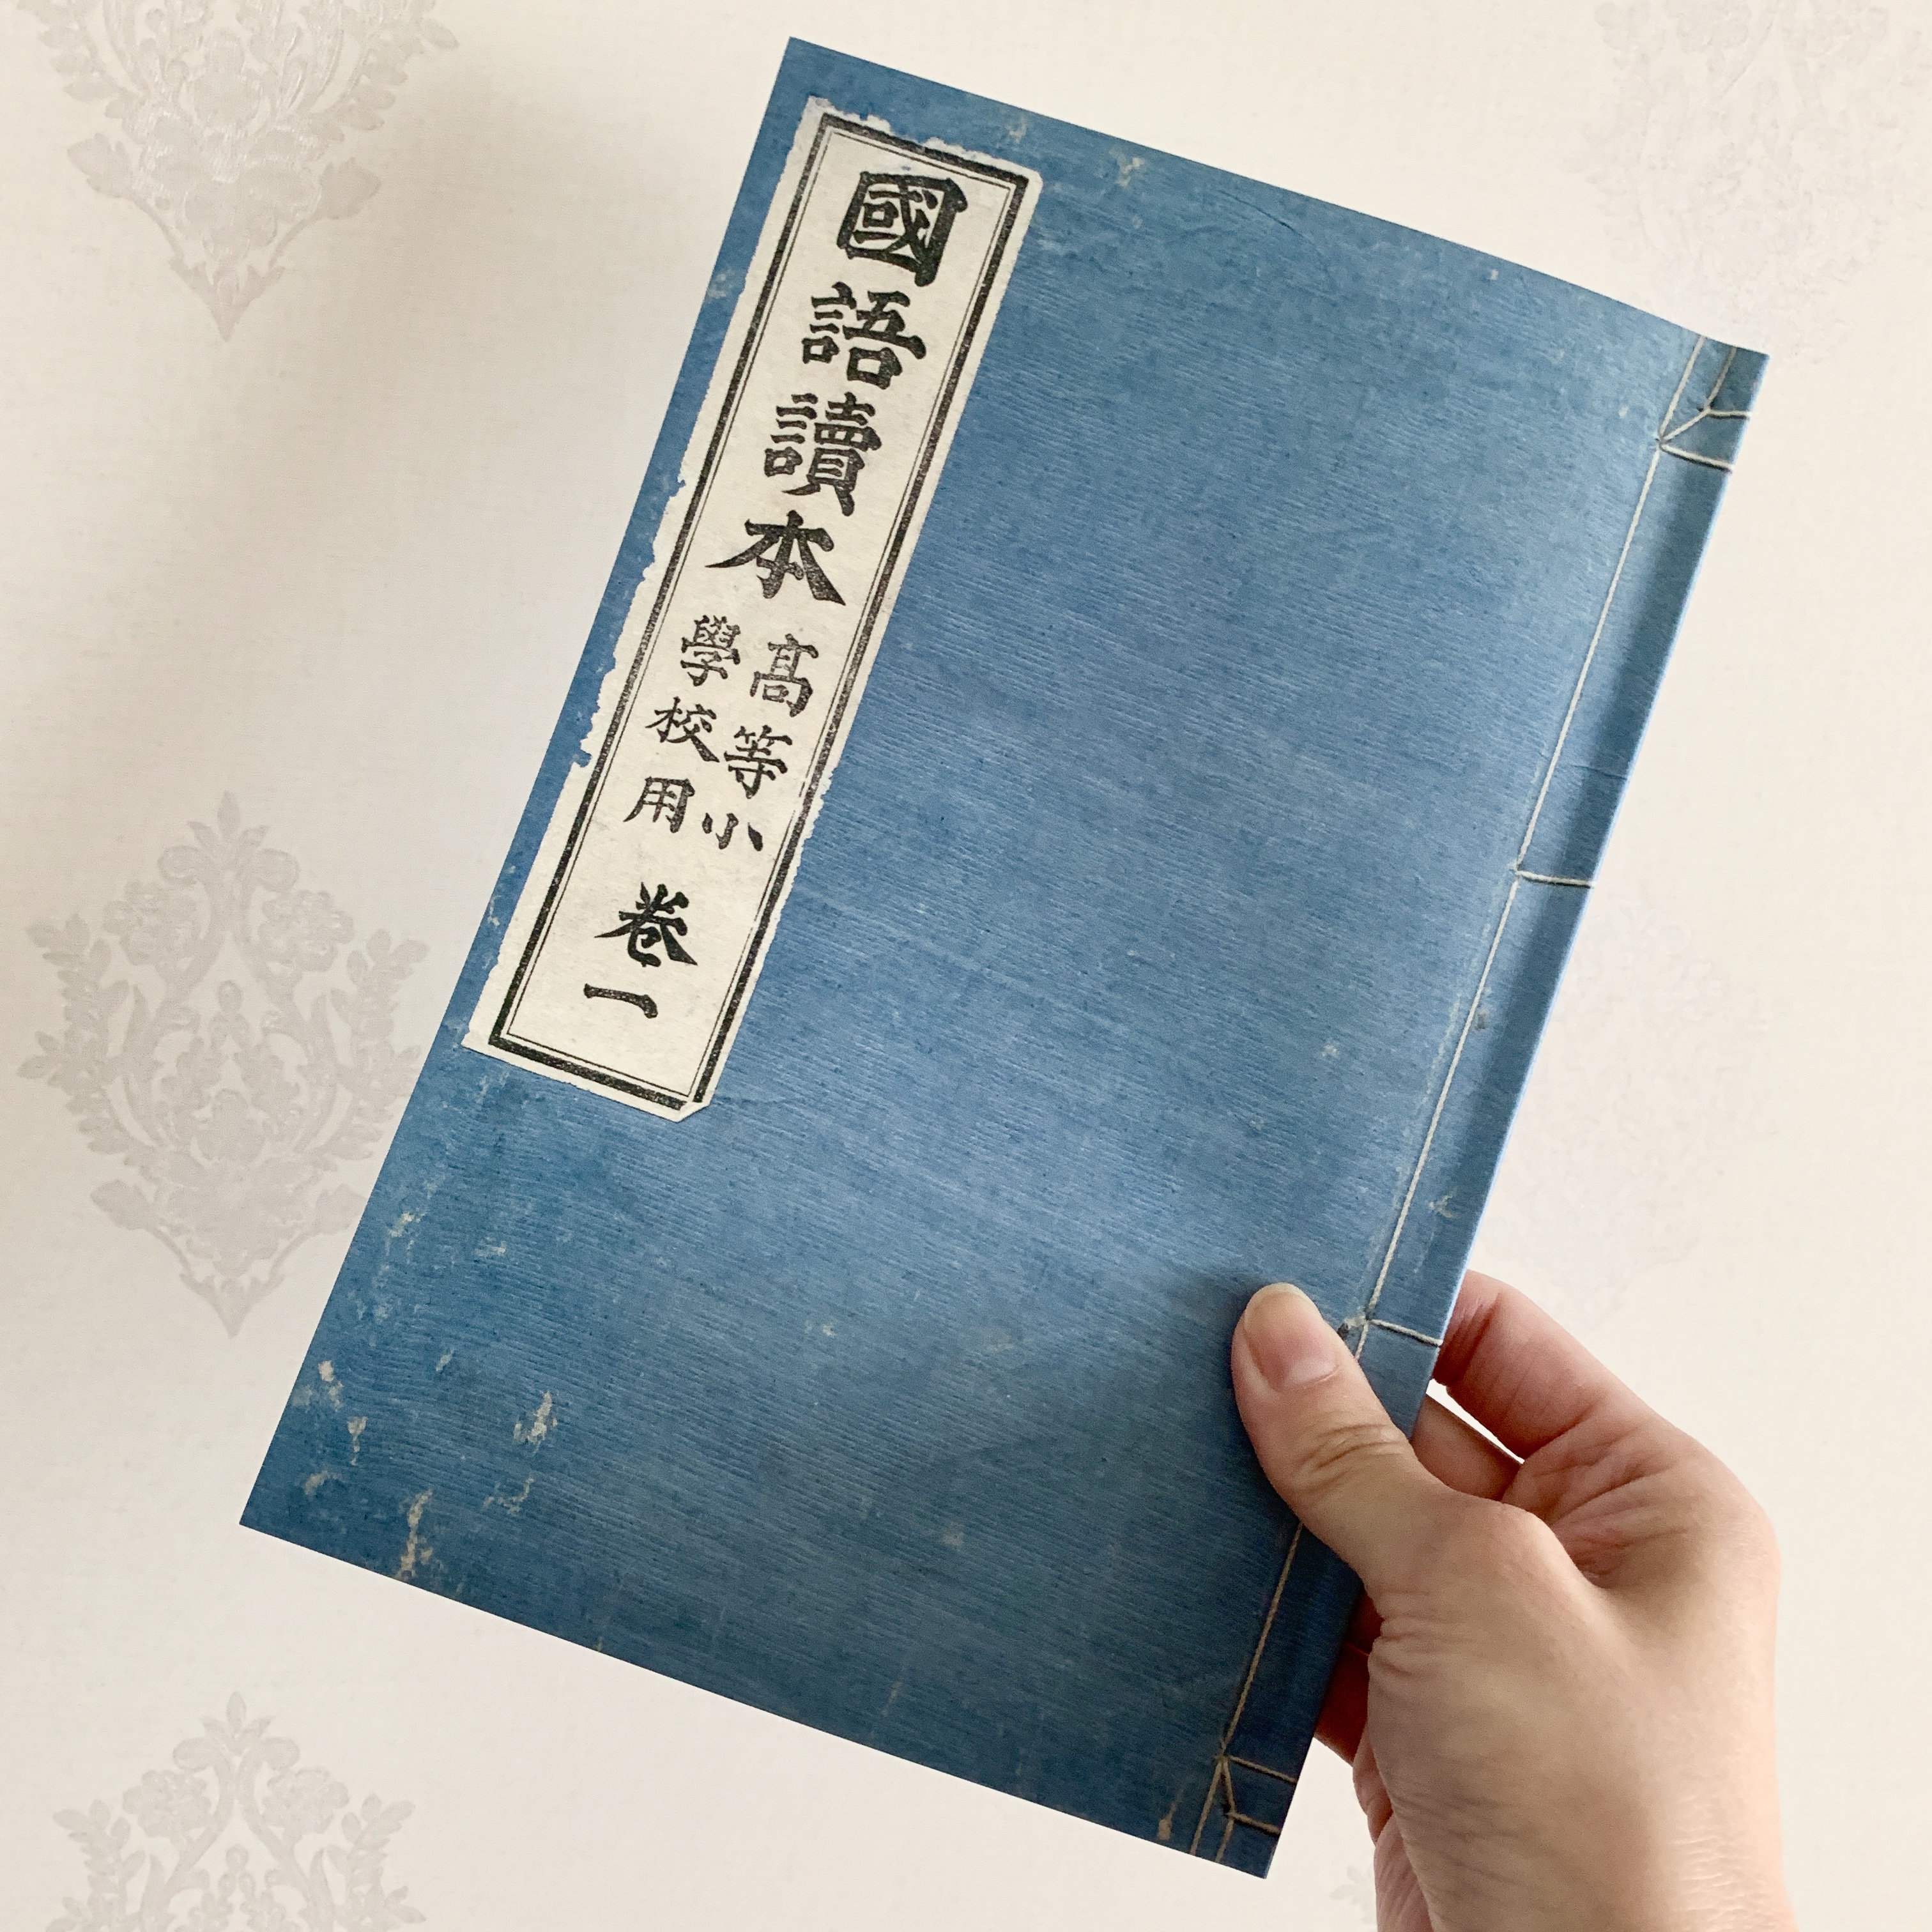 【新商品入荷のお知らせ】日本版シンデレラ「おしん物語」復刻本の販売をスタートしました！